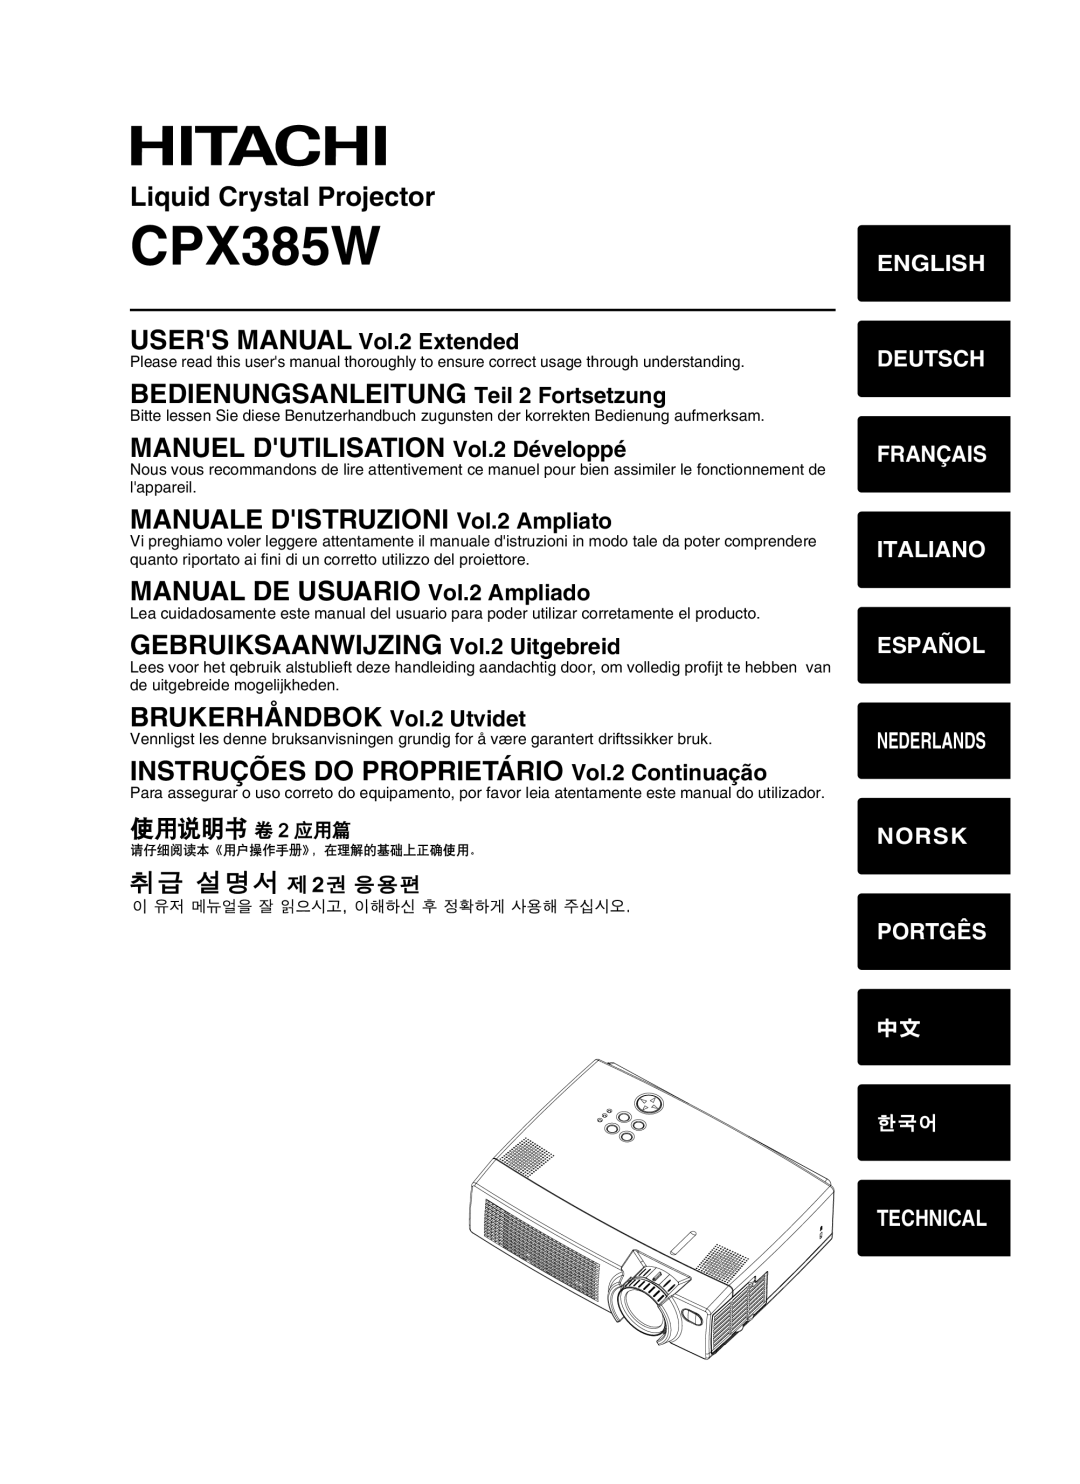 Hitachi CPX385W USERS MANUAL Vol.2 Extended, BEDIENUNGSANLEITUNG Teil 2 Fortsetzung, MANUEL DUTILISATION Vol.2 Développé 